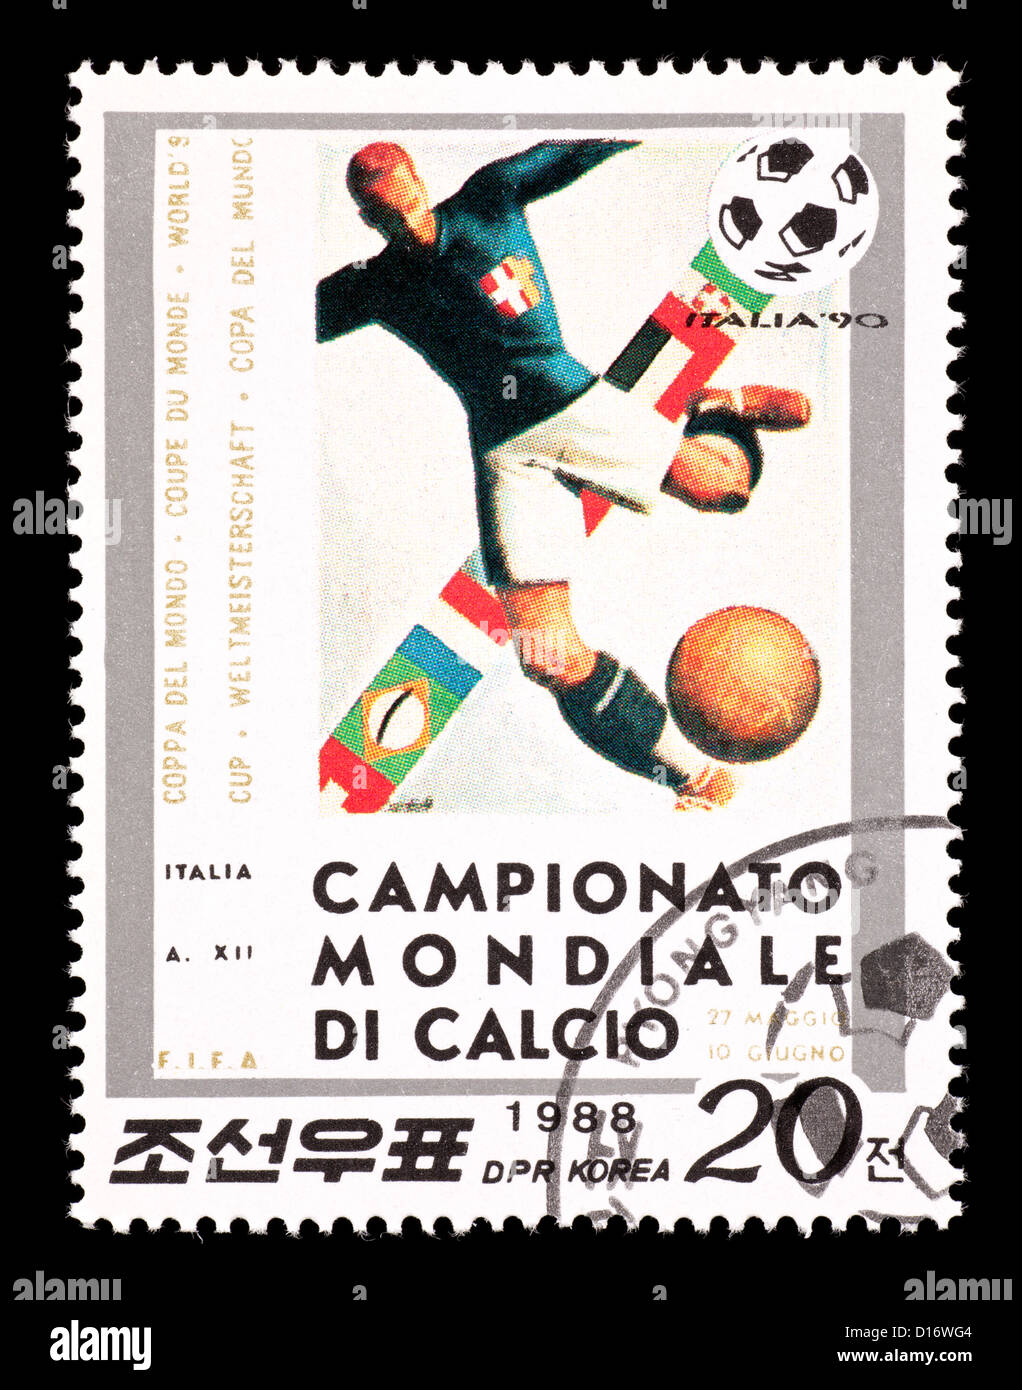 Timbre-poste à partir de la Corée du Nord représentant un joueur de football, émis pour la Coupe du Monde de Football 1990 en Italie. Banque D'Images